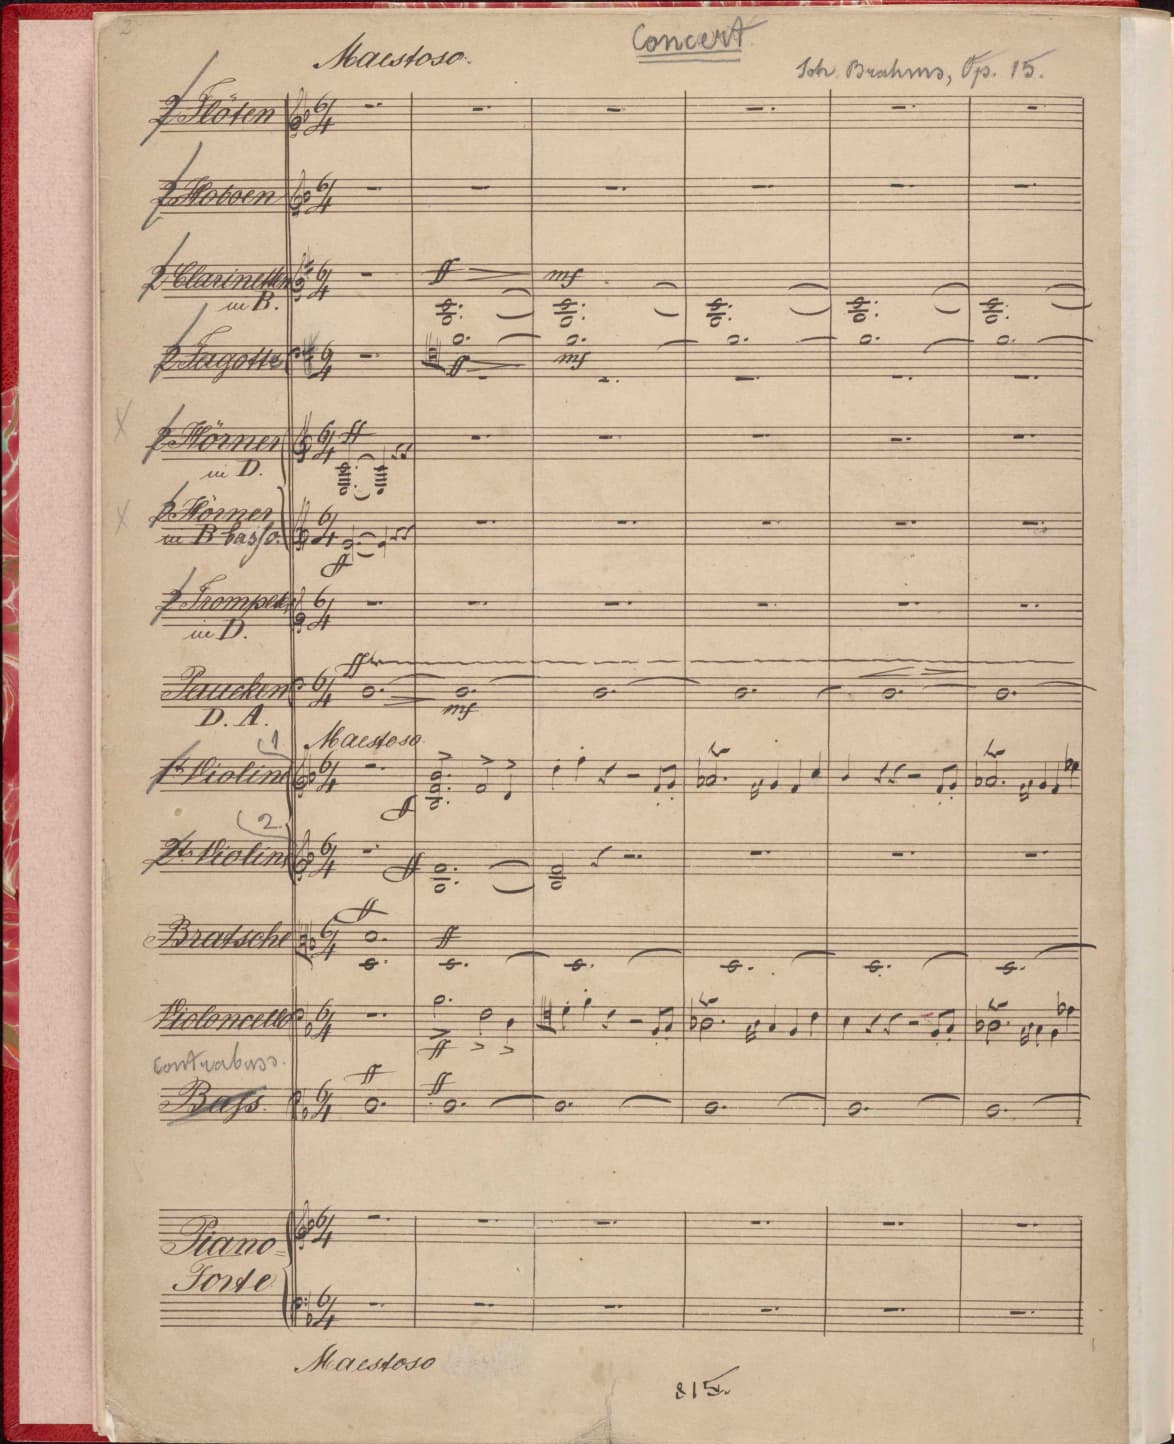 Brahms's Piano Concerto No. 1, Op. 15 copyist's manuscript